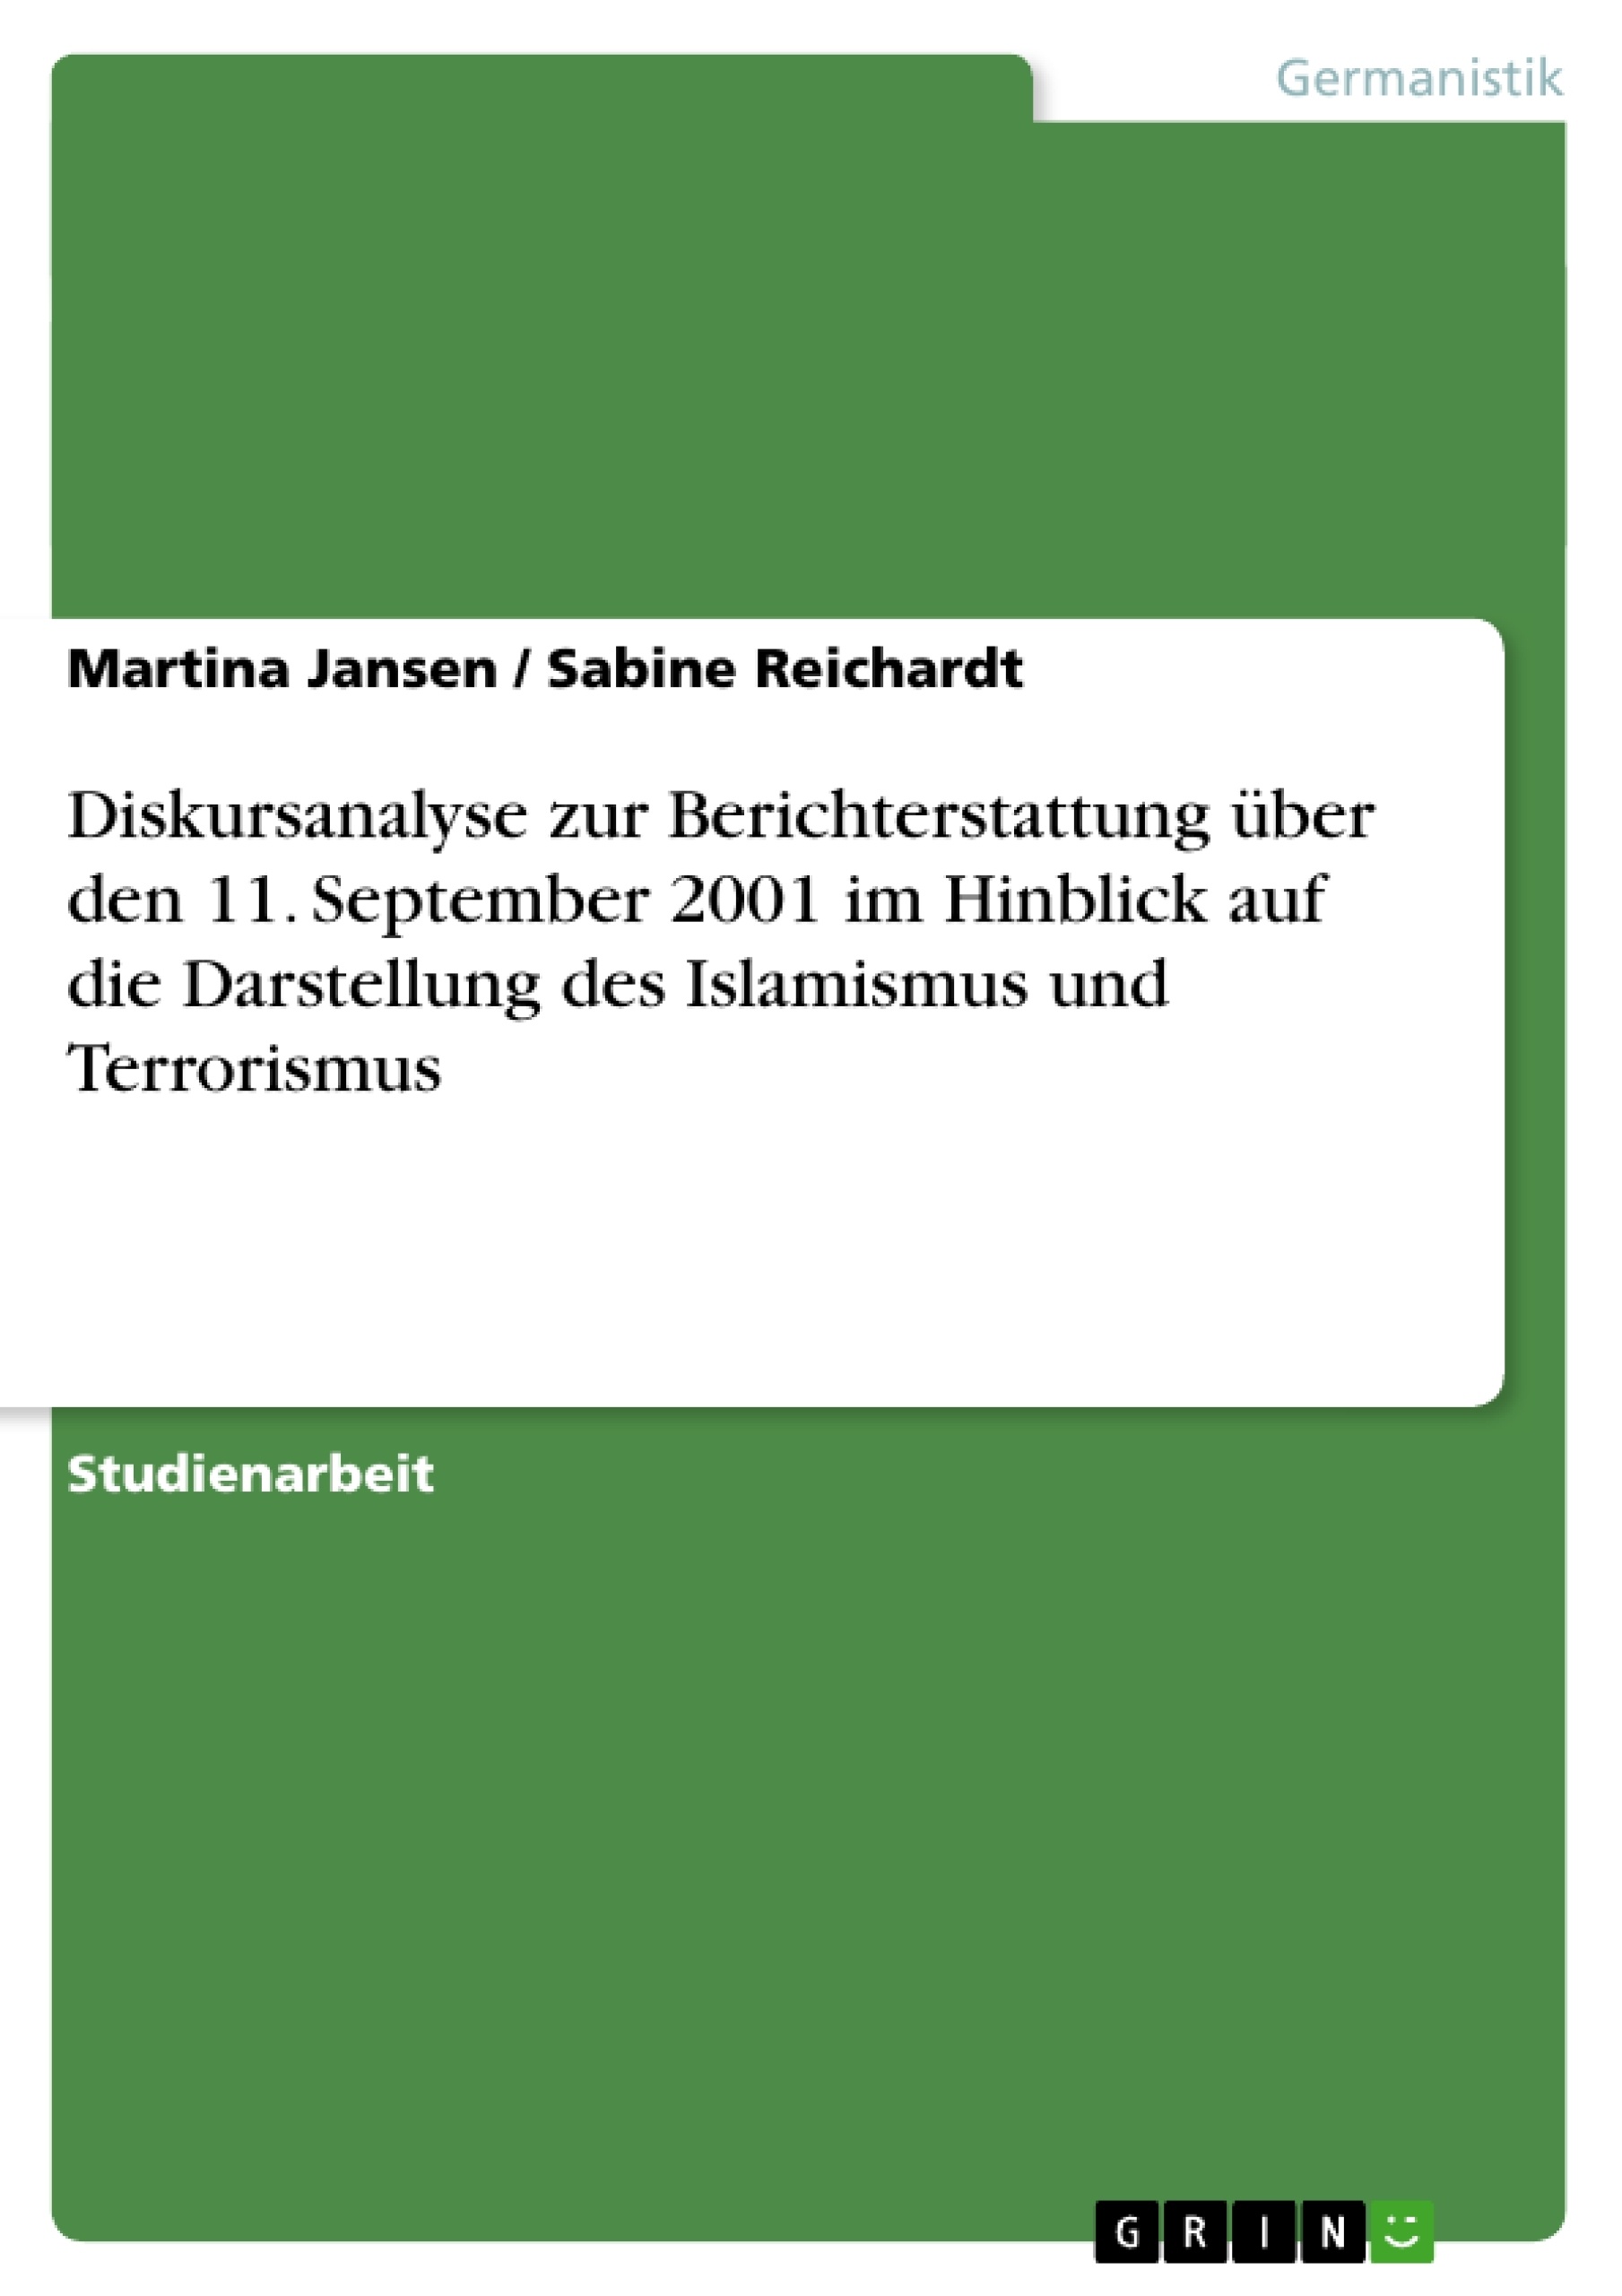 Titre: Diskursanalyse zur Berichterstattung über den 11. September 2001 im Hinblick auf die Darstellung des Islamismus und Terrorismus